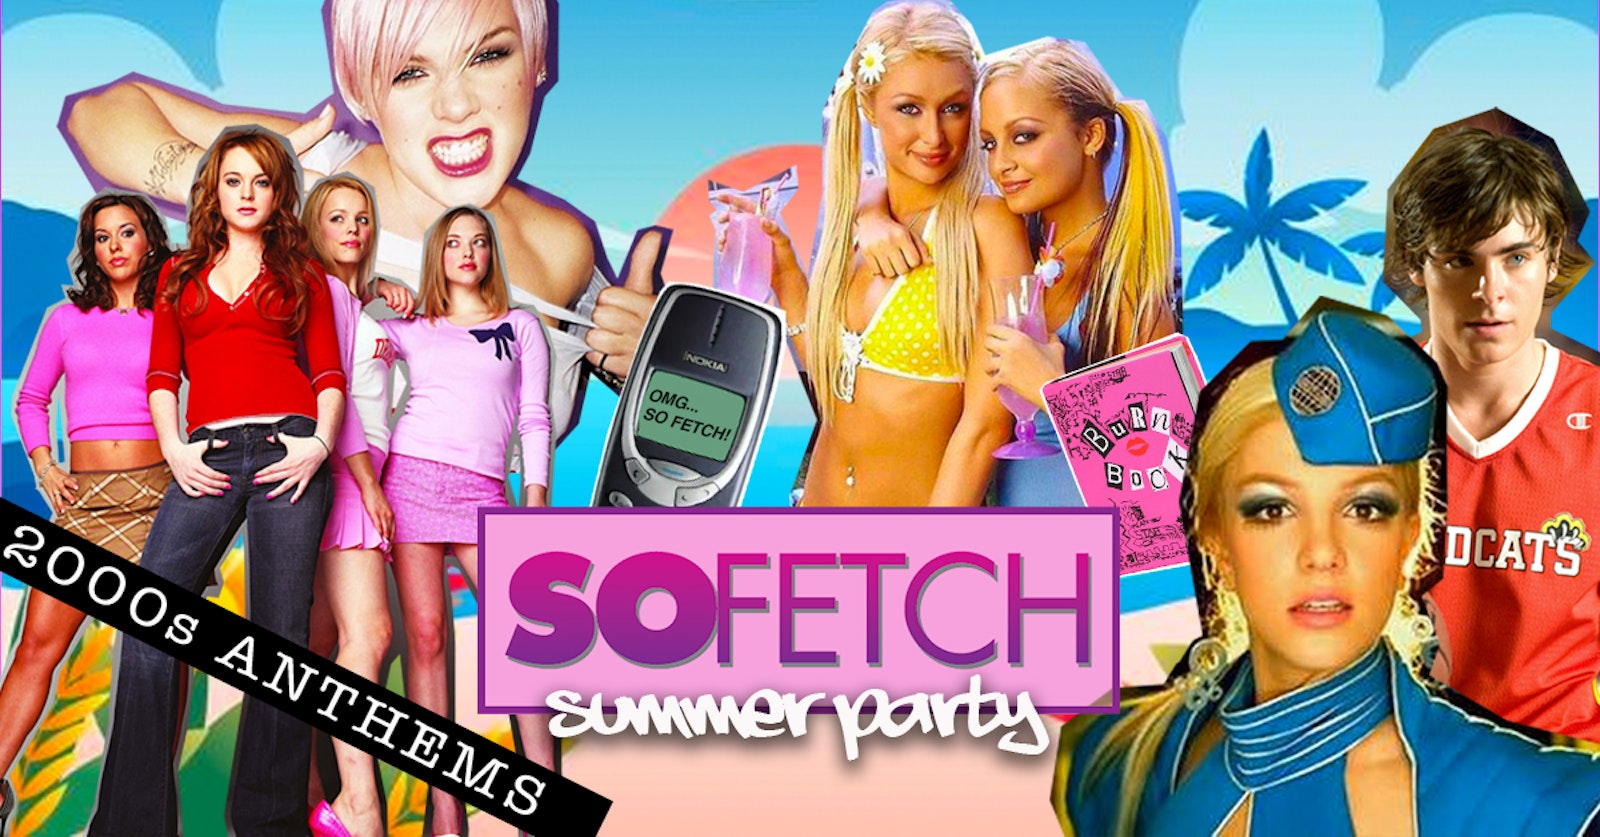 So Fetch – 2000s Summer Terrace Party (Norwich)